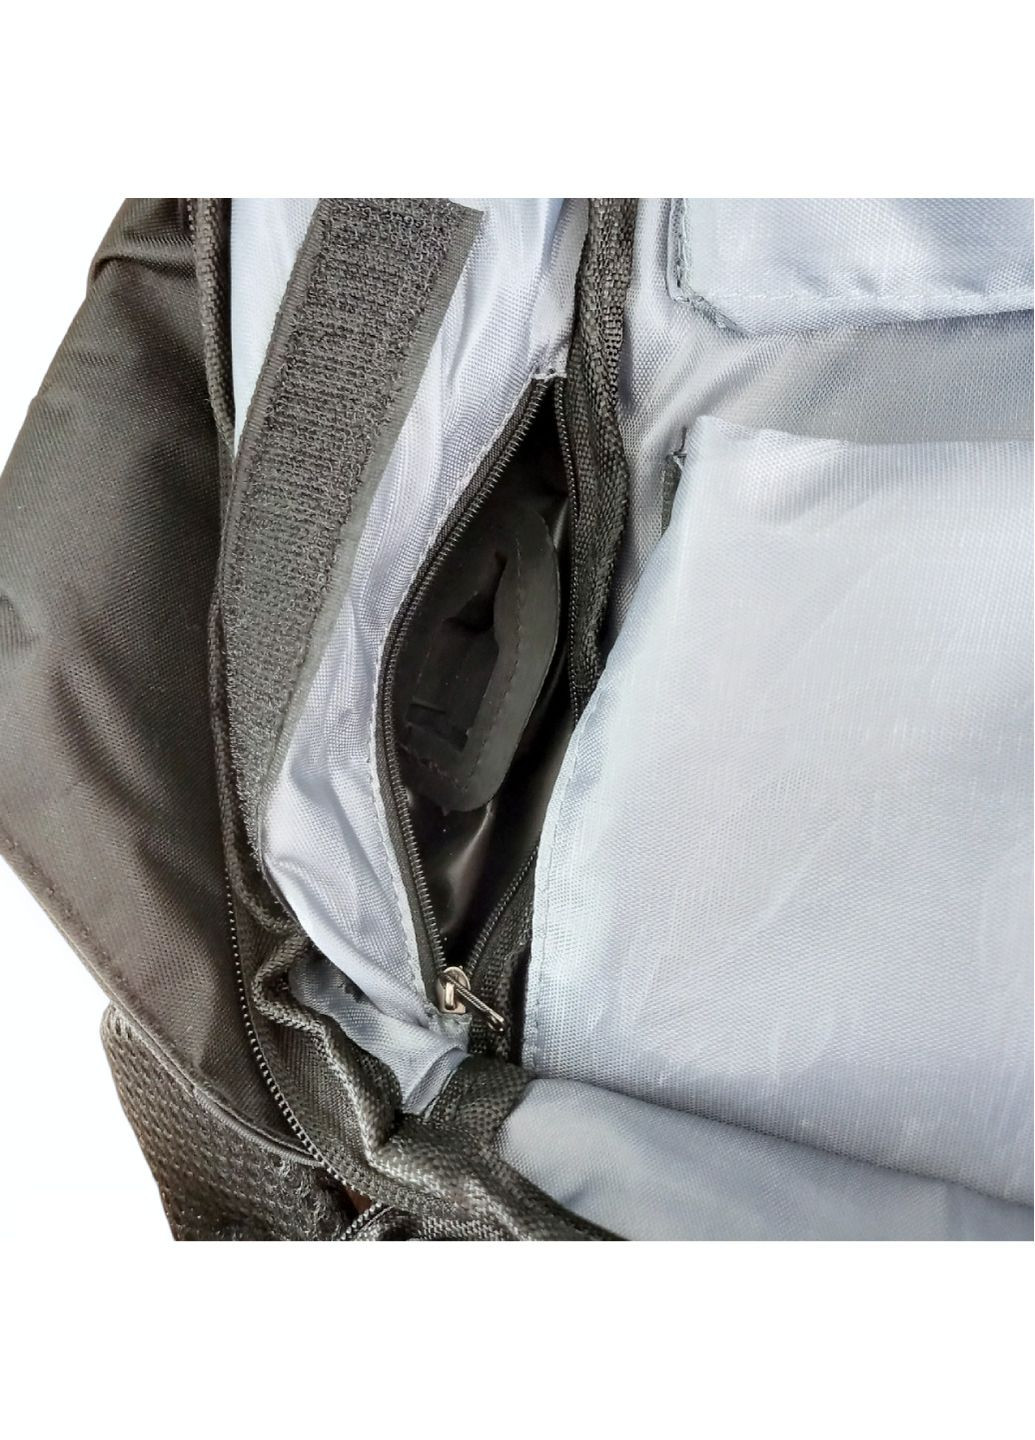 Рюкзак антикрадій із роз'ємом USB портфель сумка Bobby із захистом від крадіїв великий для роботи навчання подорожей No Brand (260601831)